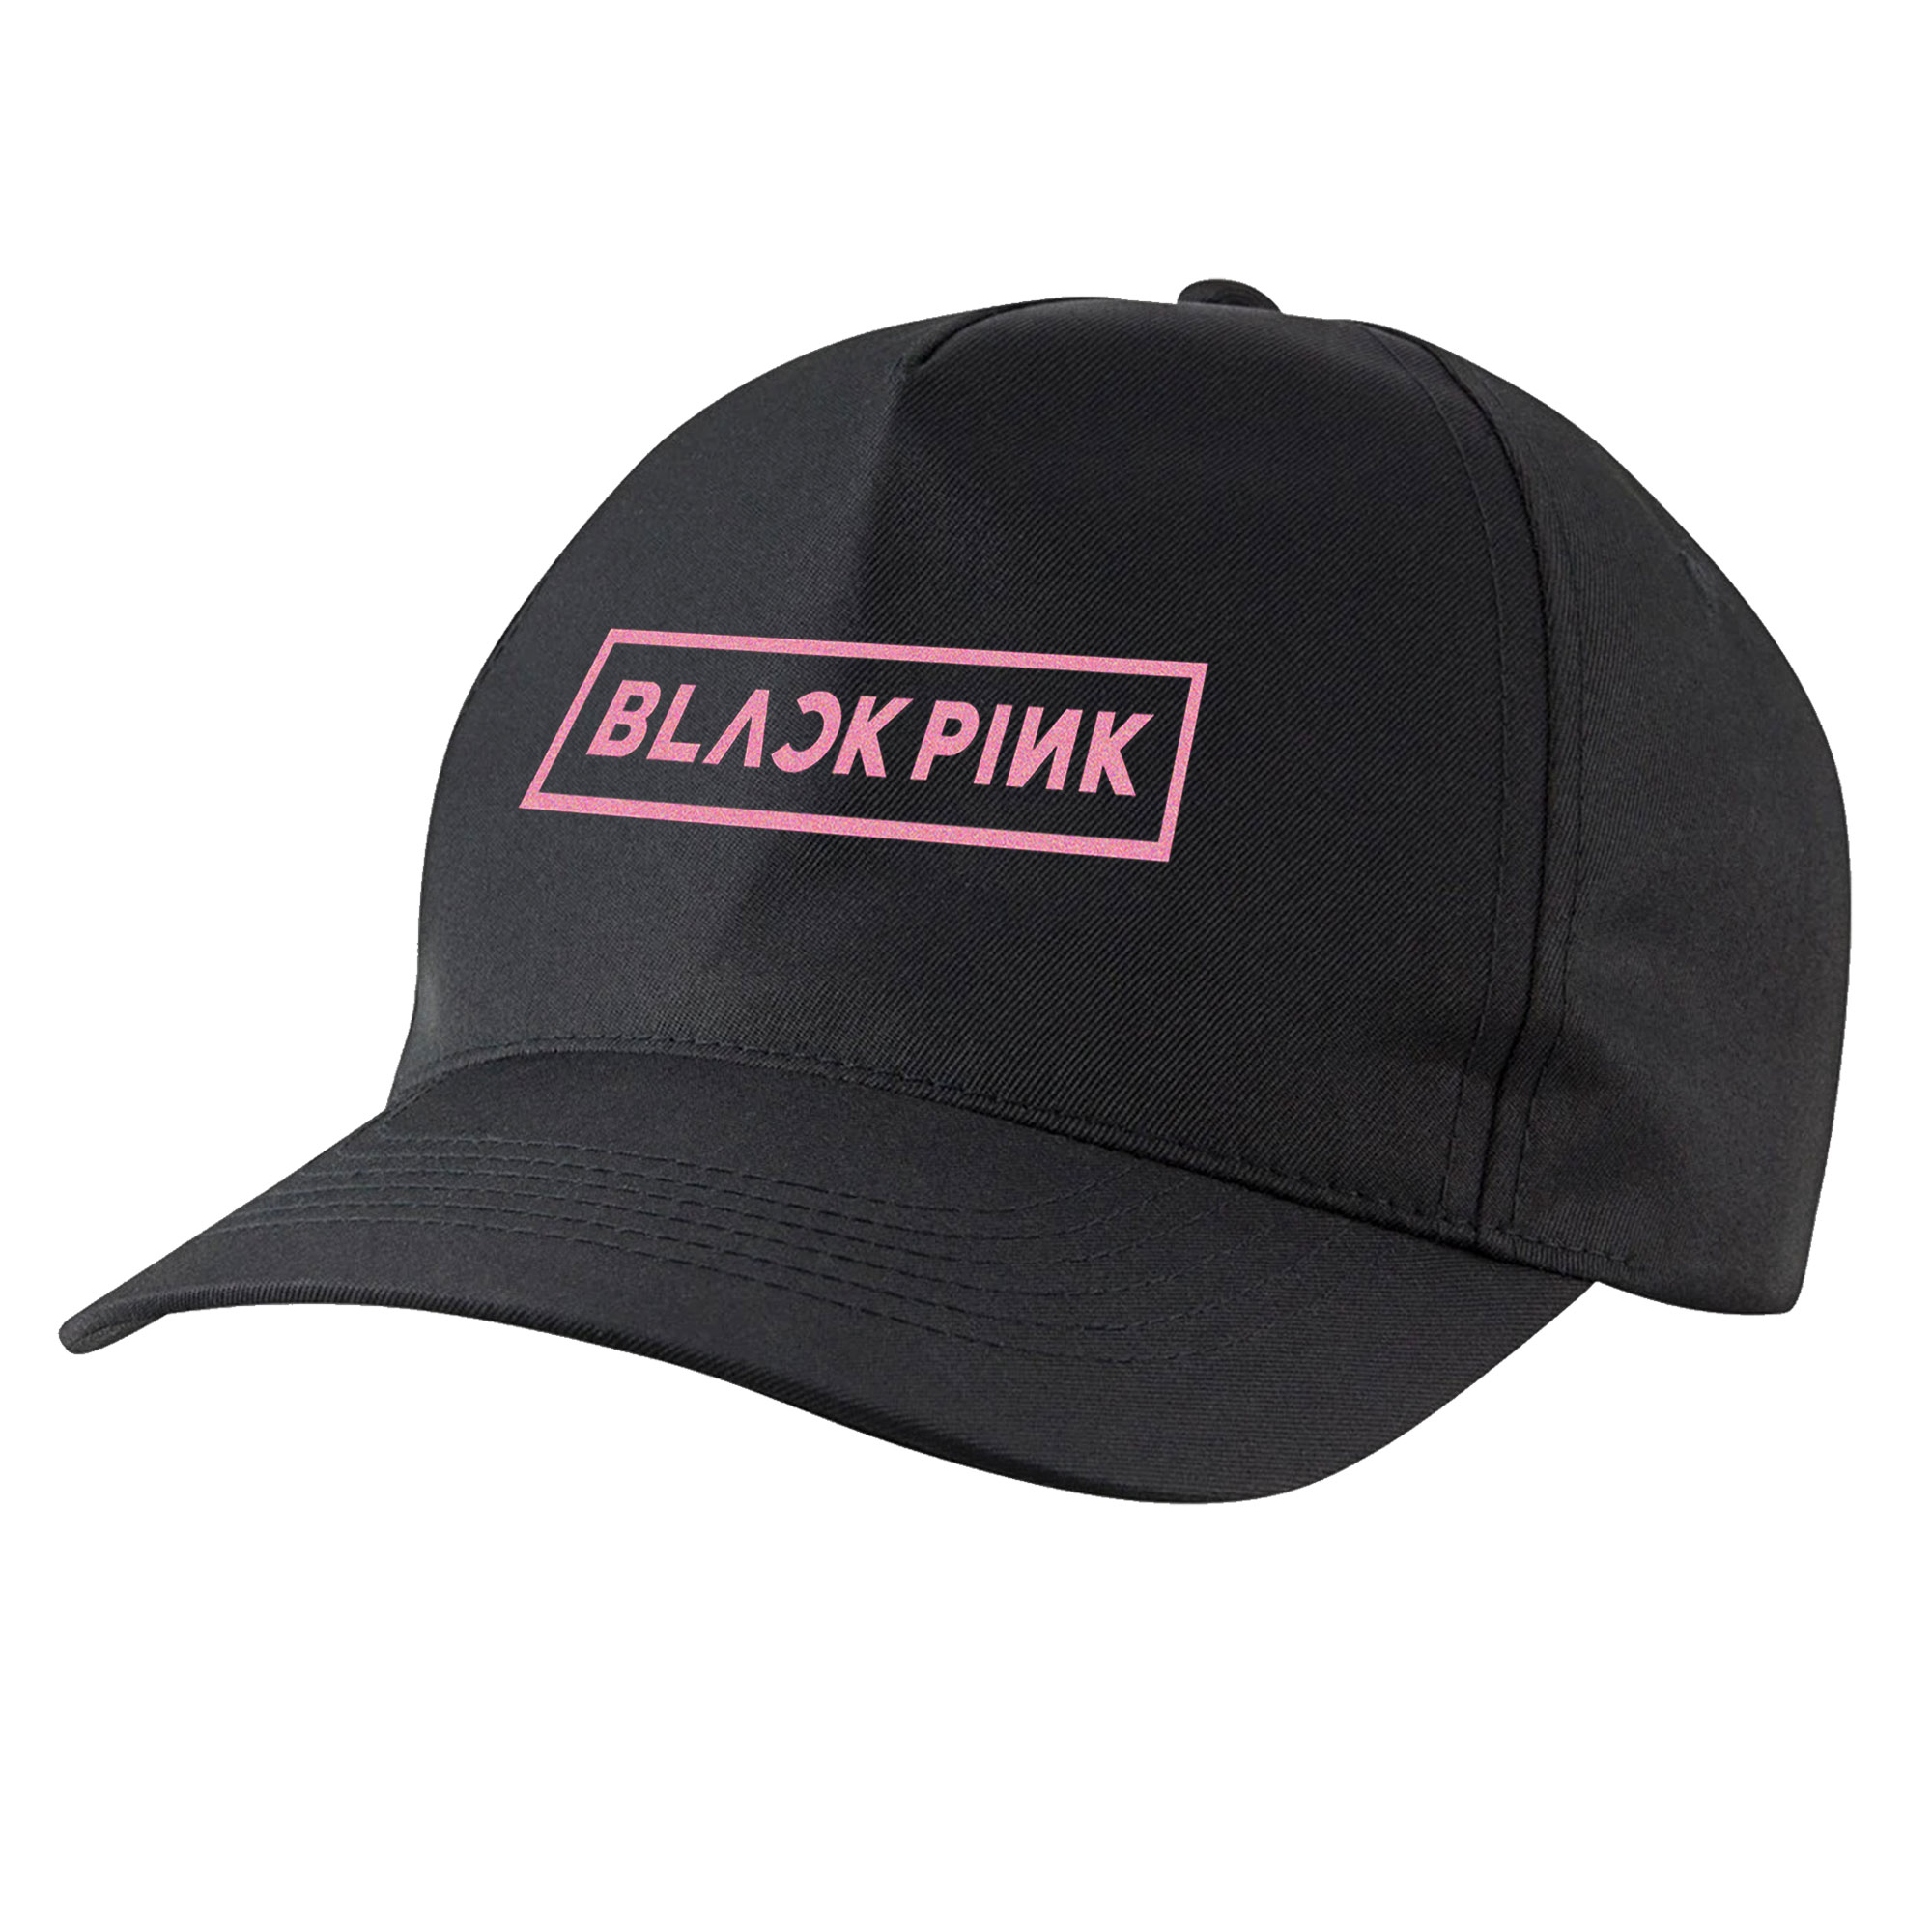 نکته خرید - قیمت روز کلاه کپ مدل گروه Black Pink کد bb-20 خرید